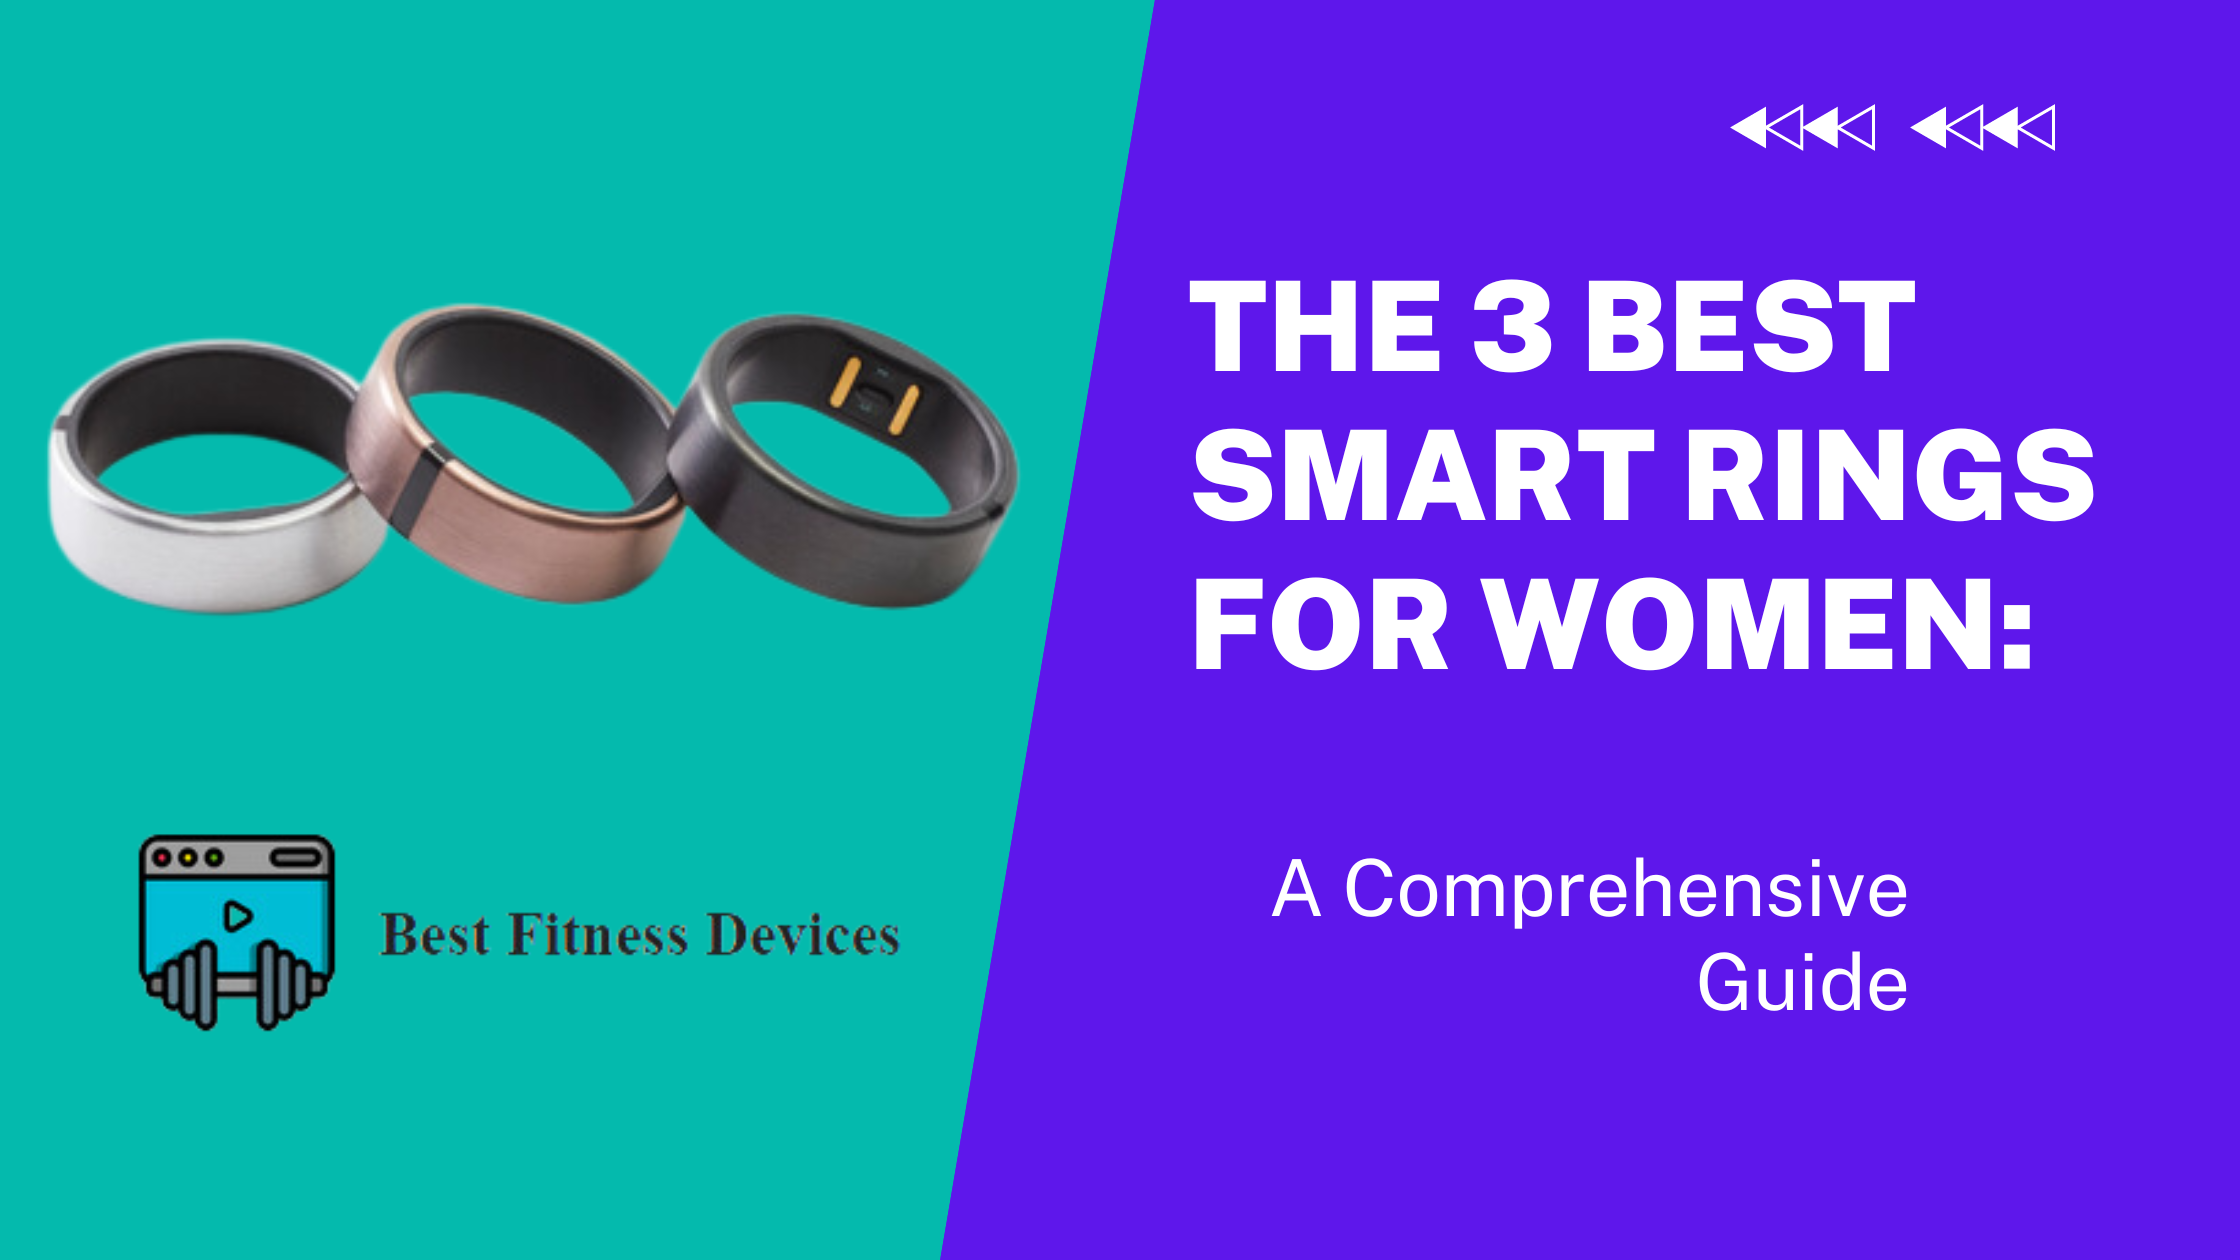 The 3 Best Smart Rings for Women